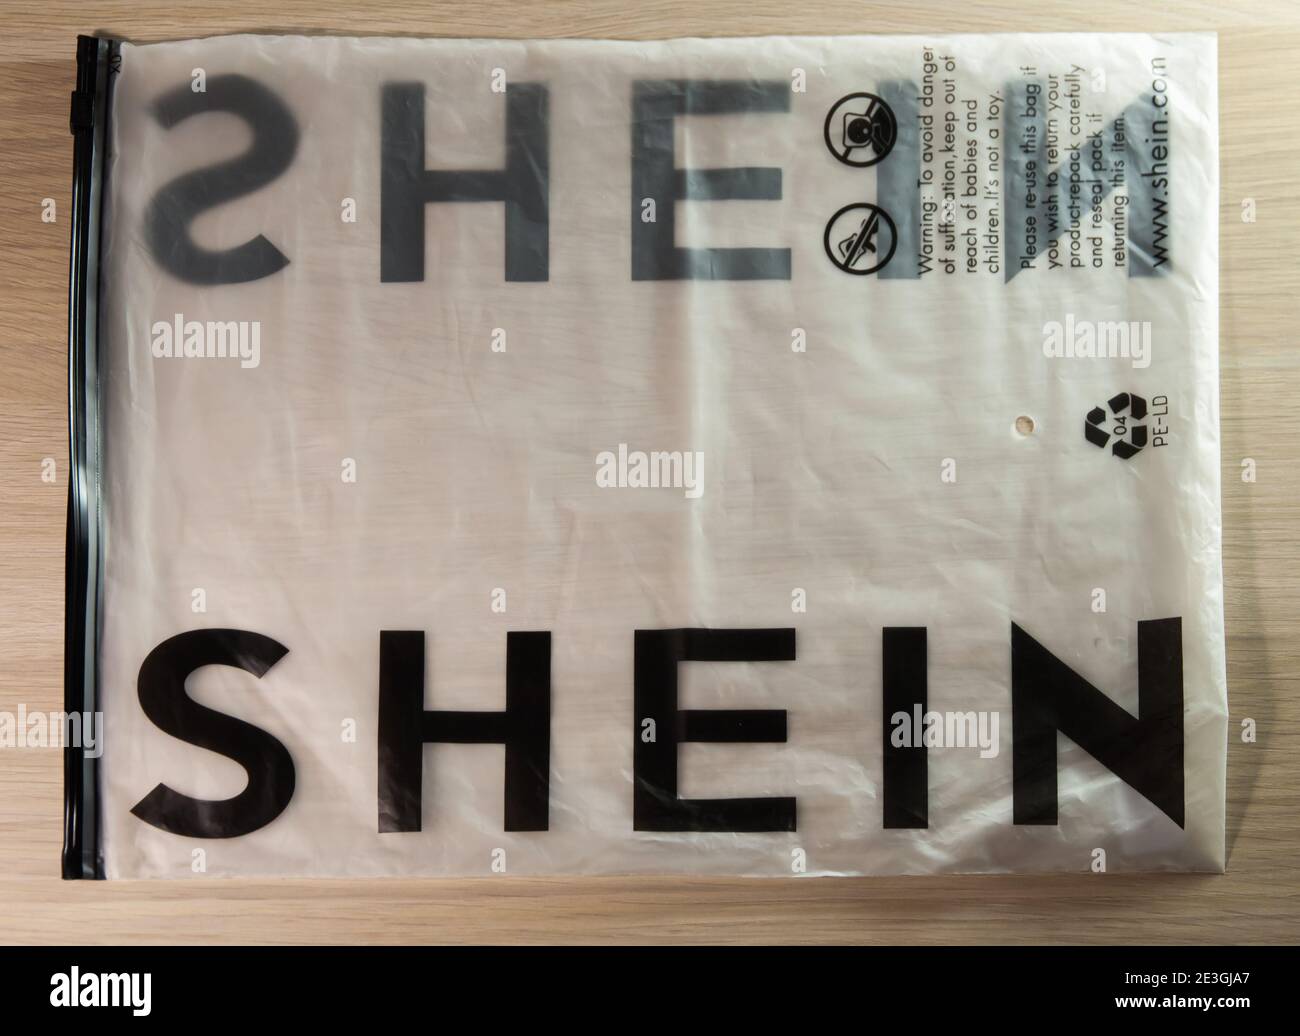 https://c8.alamy.com/comp/2E3GJA7/krasnodar-russia-december-7-2020-packaging-with-the-shein-logo-isolated-on-a-white-background-2E3GJA7.jpg